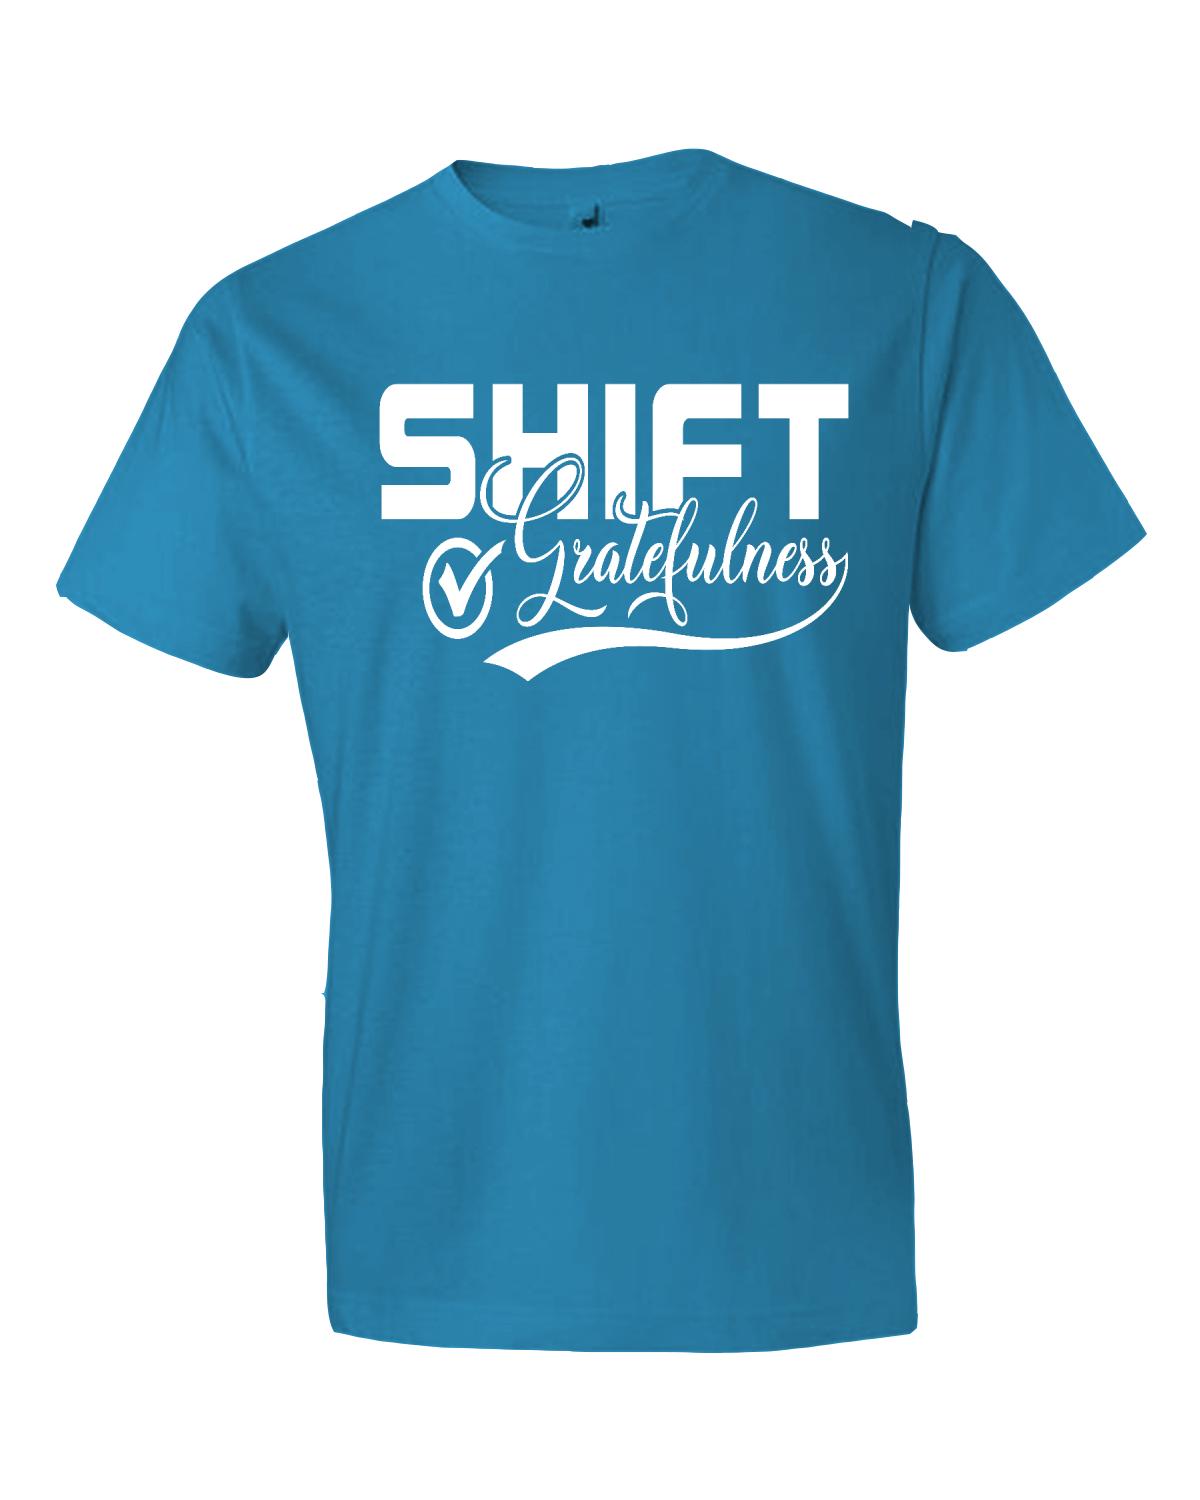 Shift Gratefulness Softstyle® Lightweight T-Shirt